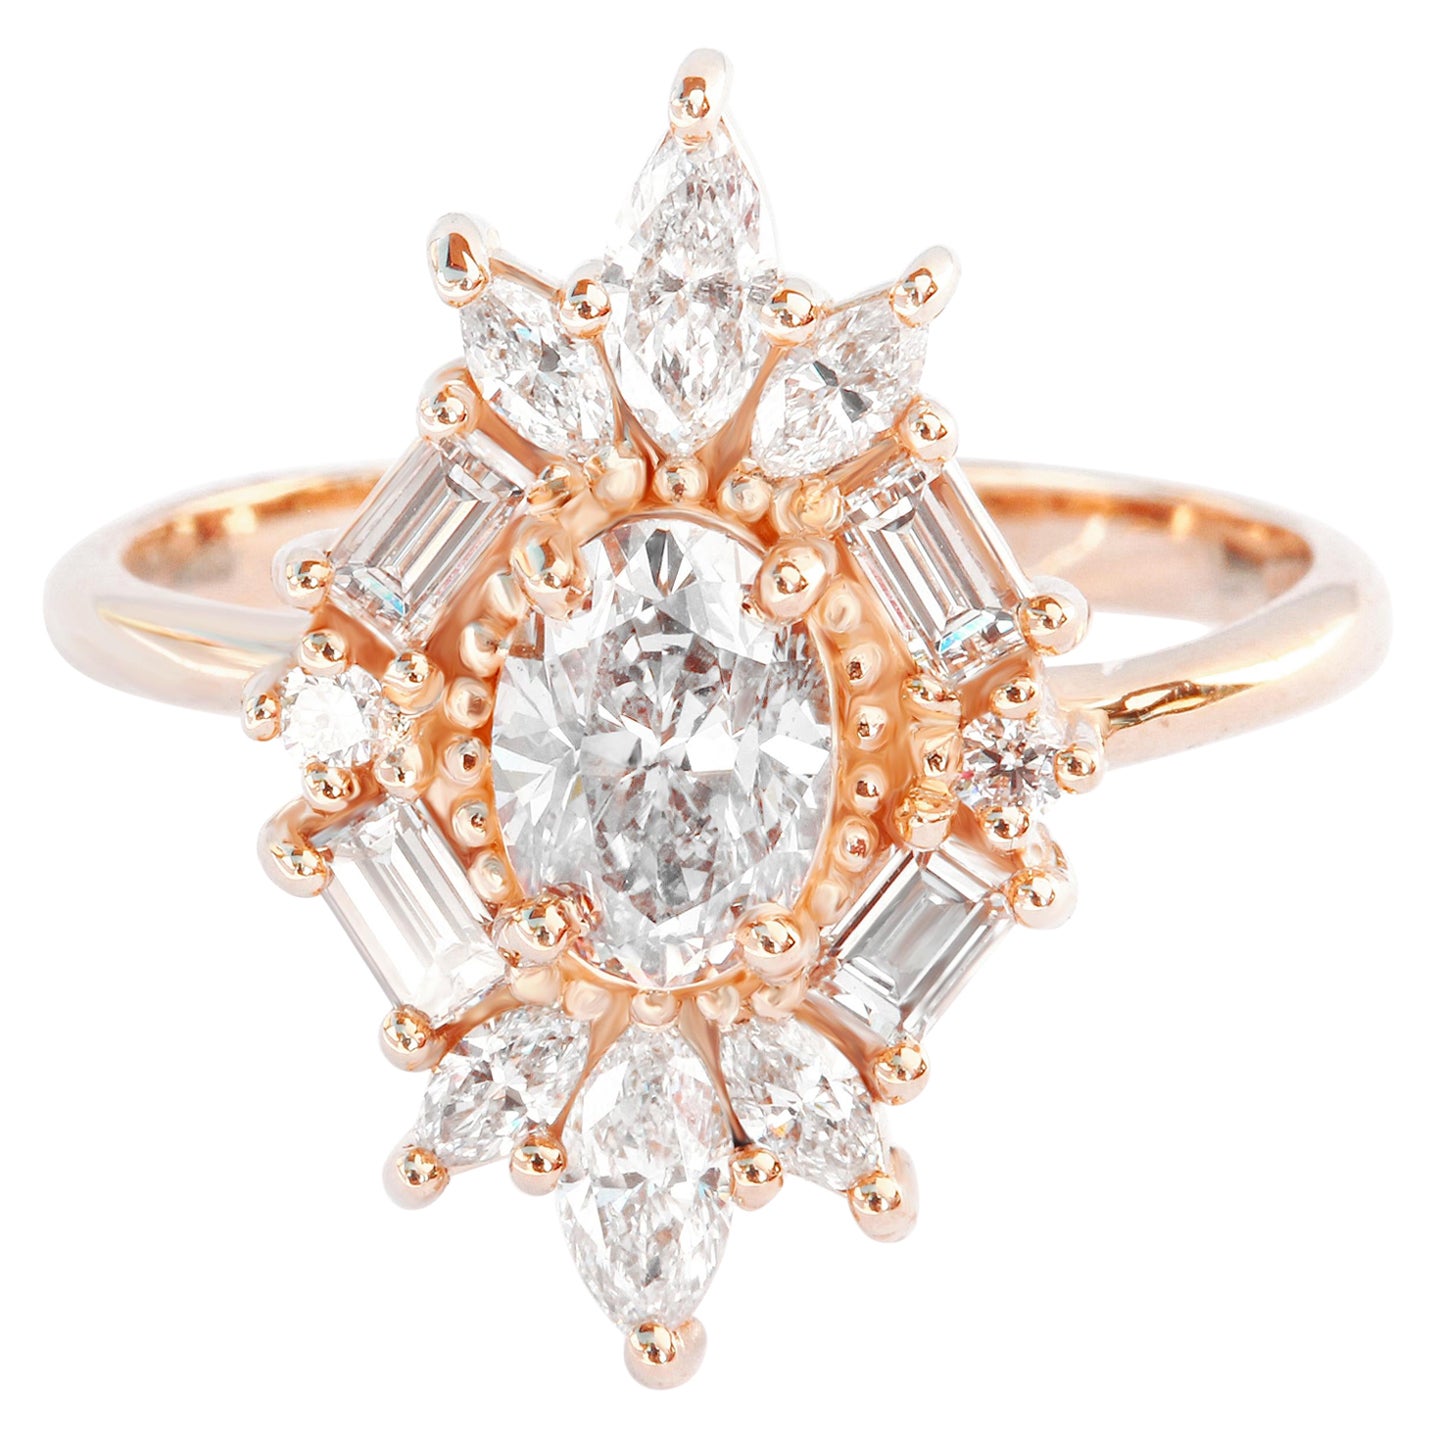 Ovaler, einzigartiger viktorianischer Diamant-Verlobungsring, Statement-Ring, The Great Gatsby